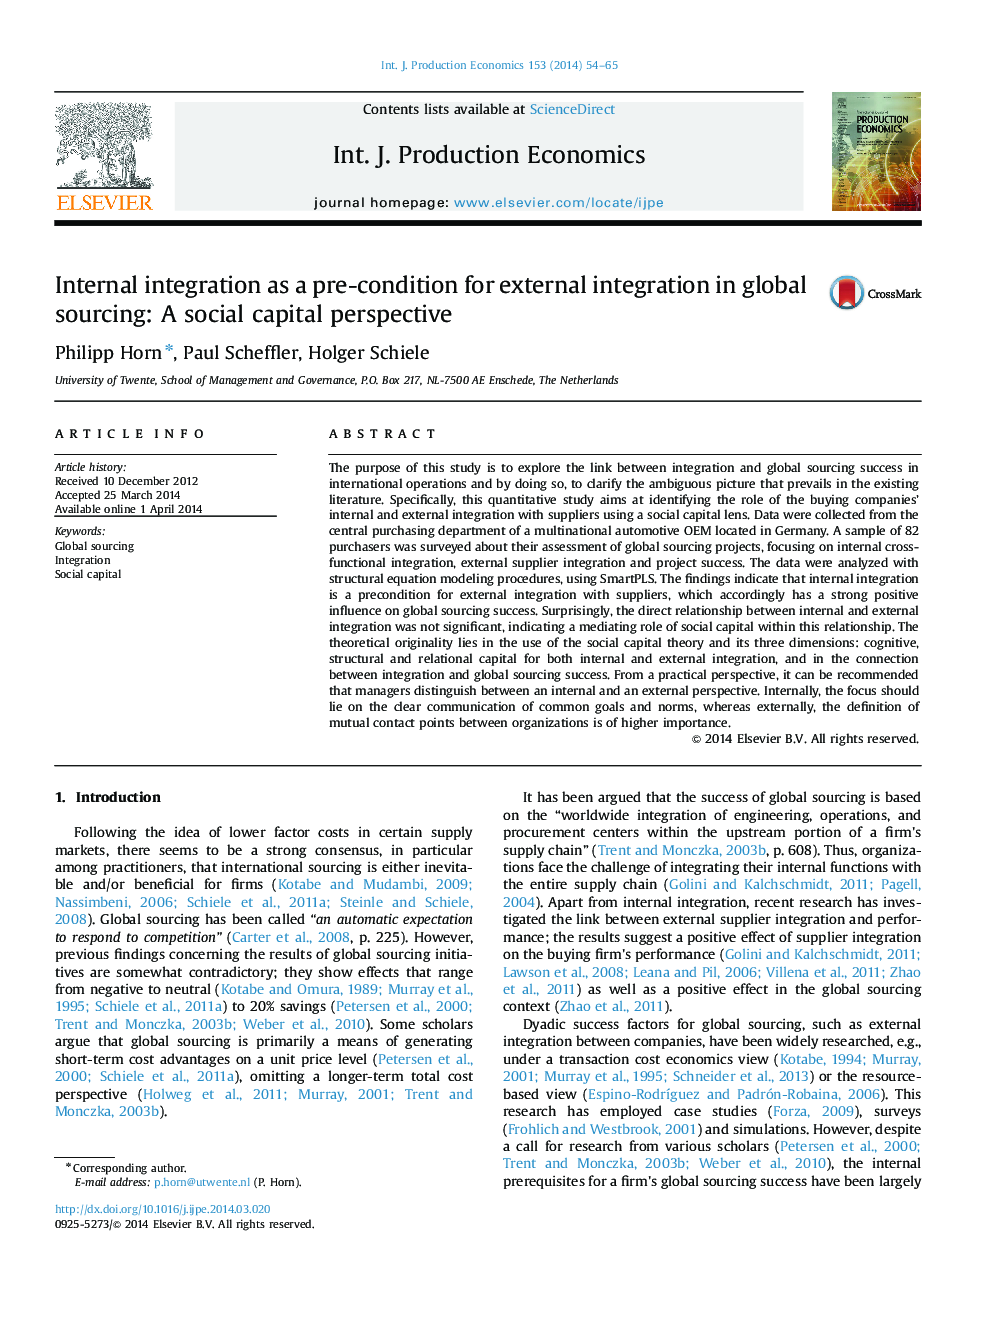 یکپارچگی داخلی به عنوان یک پیش شرط برای یکپارچگی خارجی در منابع جهانی: چشم انداز سرمایه اجتماعی 